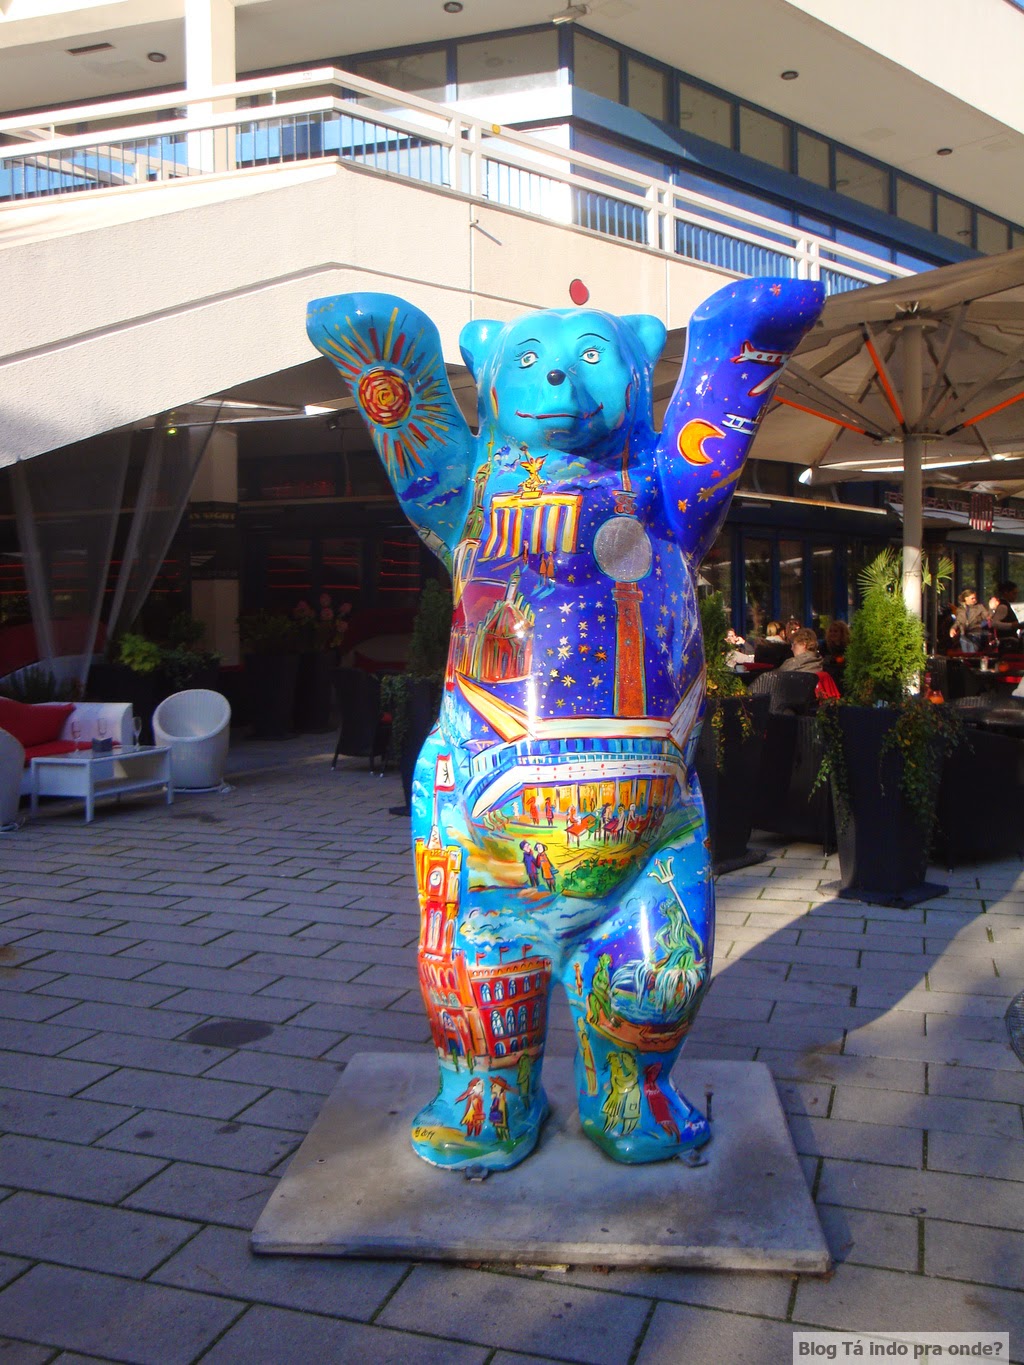 Buddy Bears em Berlim